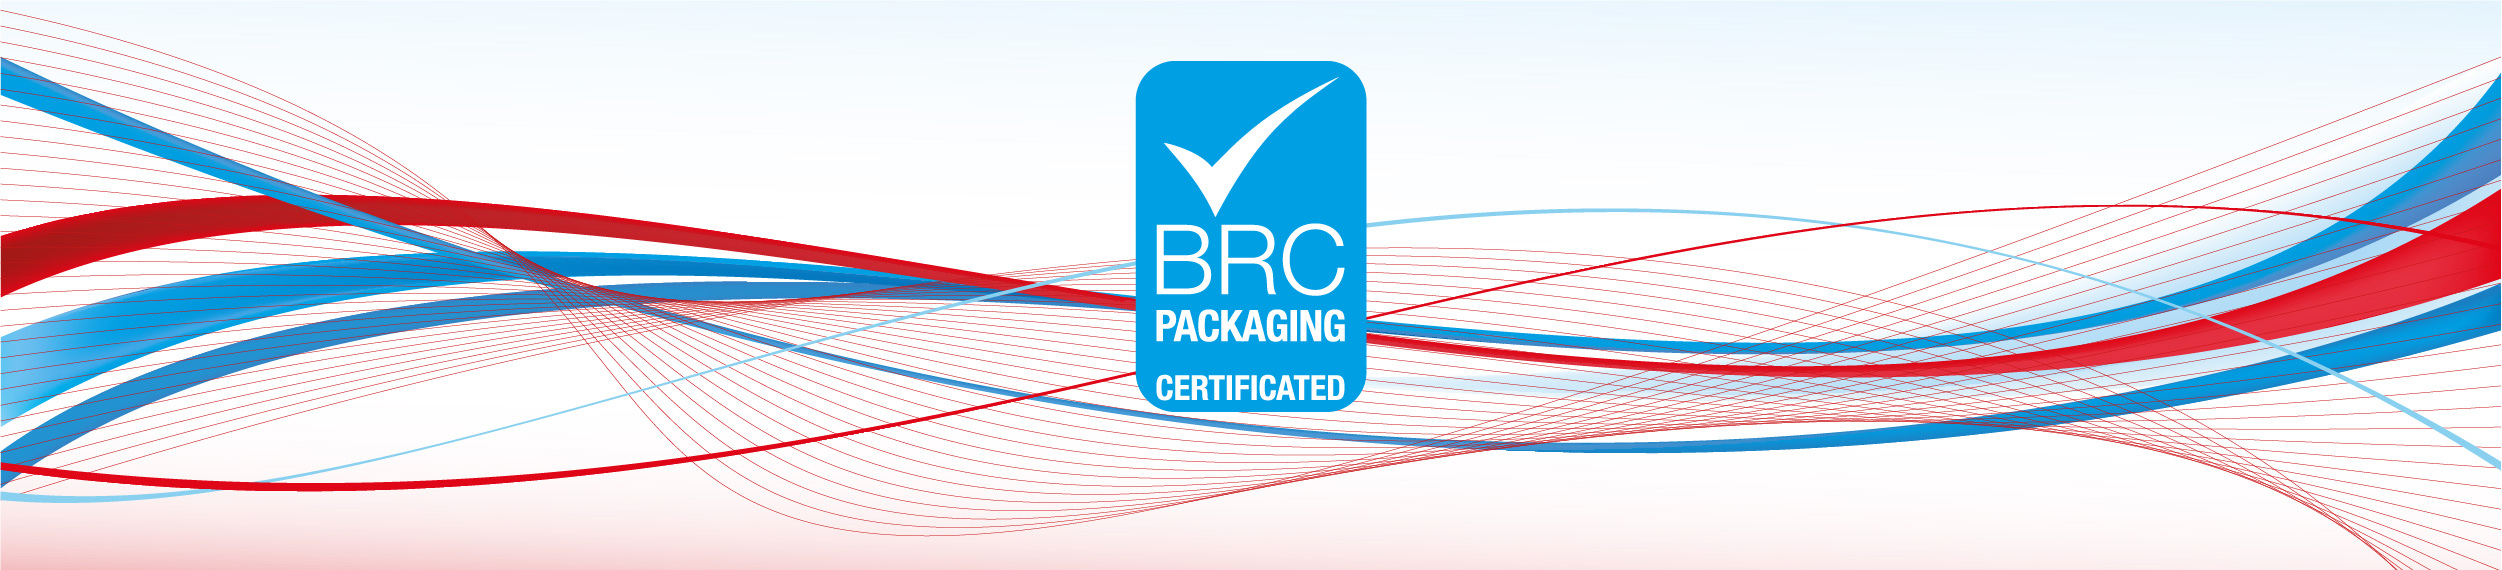 banner brc litochap - ¡Sumamos BRC Packaging a nuestras certificaciones!